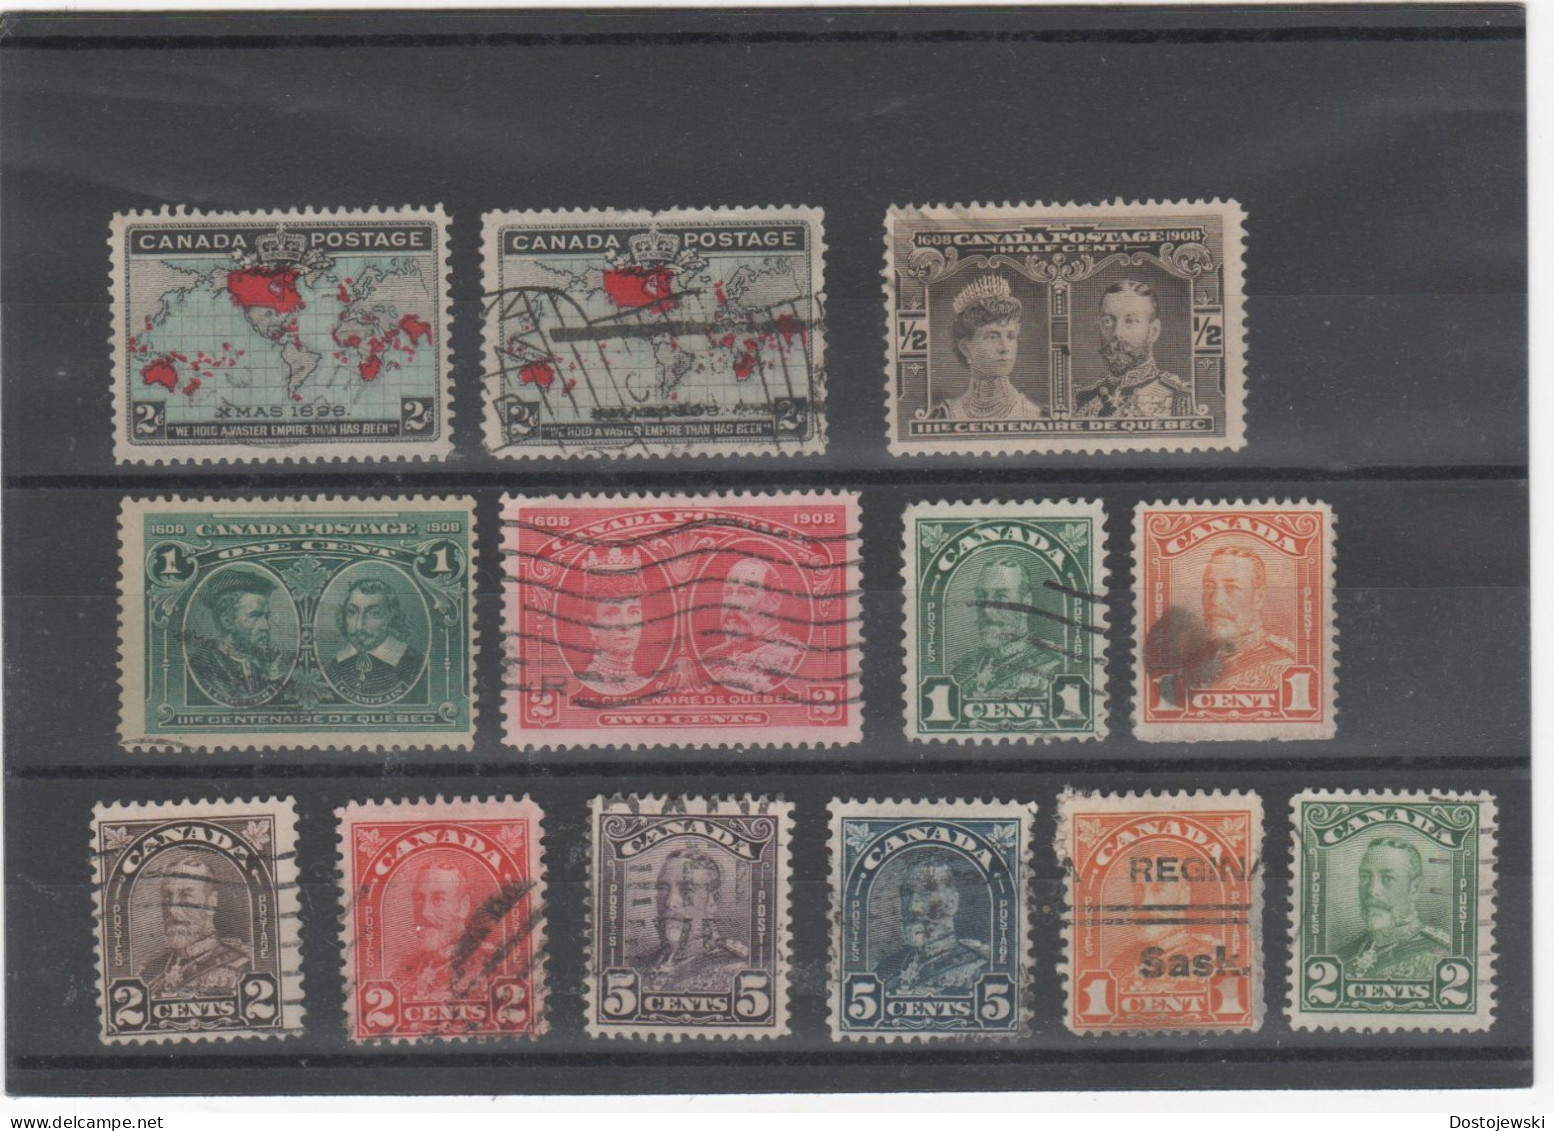 Canada - Kanada, Lot Of Used Stamps Ex 1898-c. 1930, 13 Stamps - Gebruikt